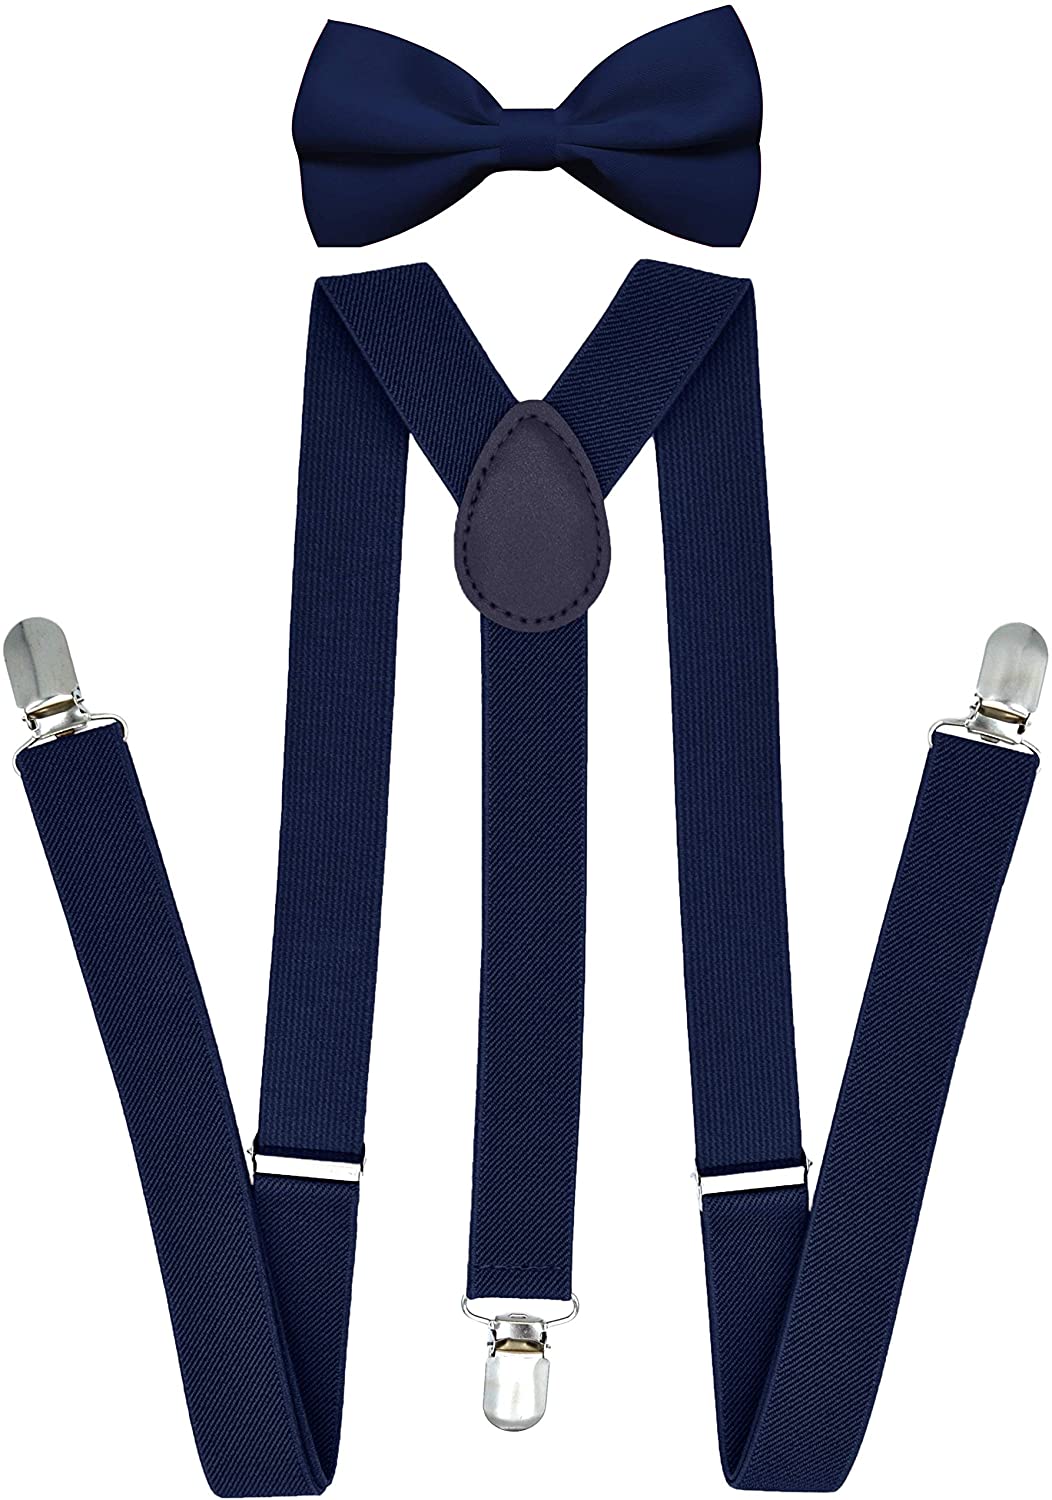 Mens Adjustable Elastic Suspenders y Bow Tie Set